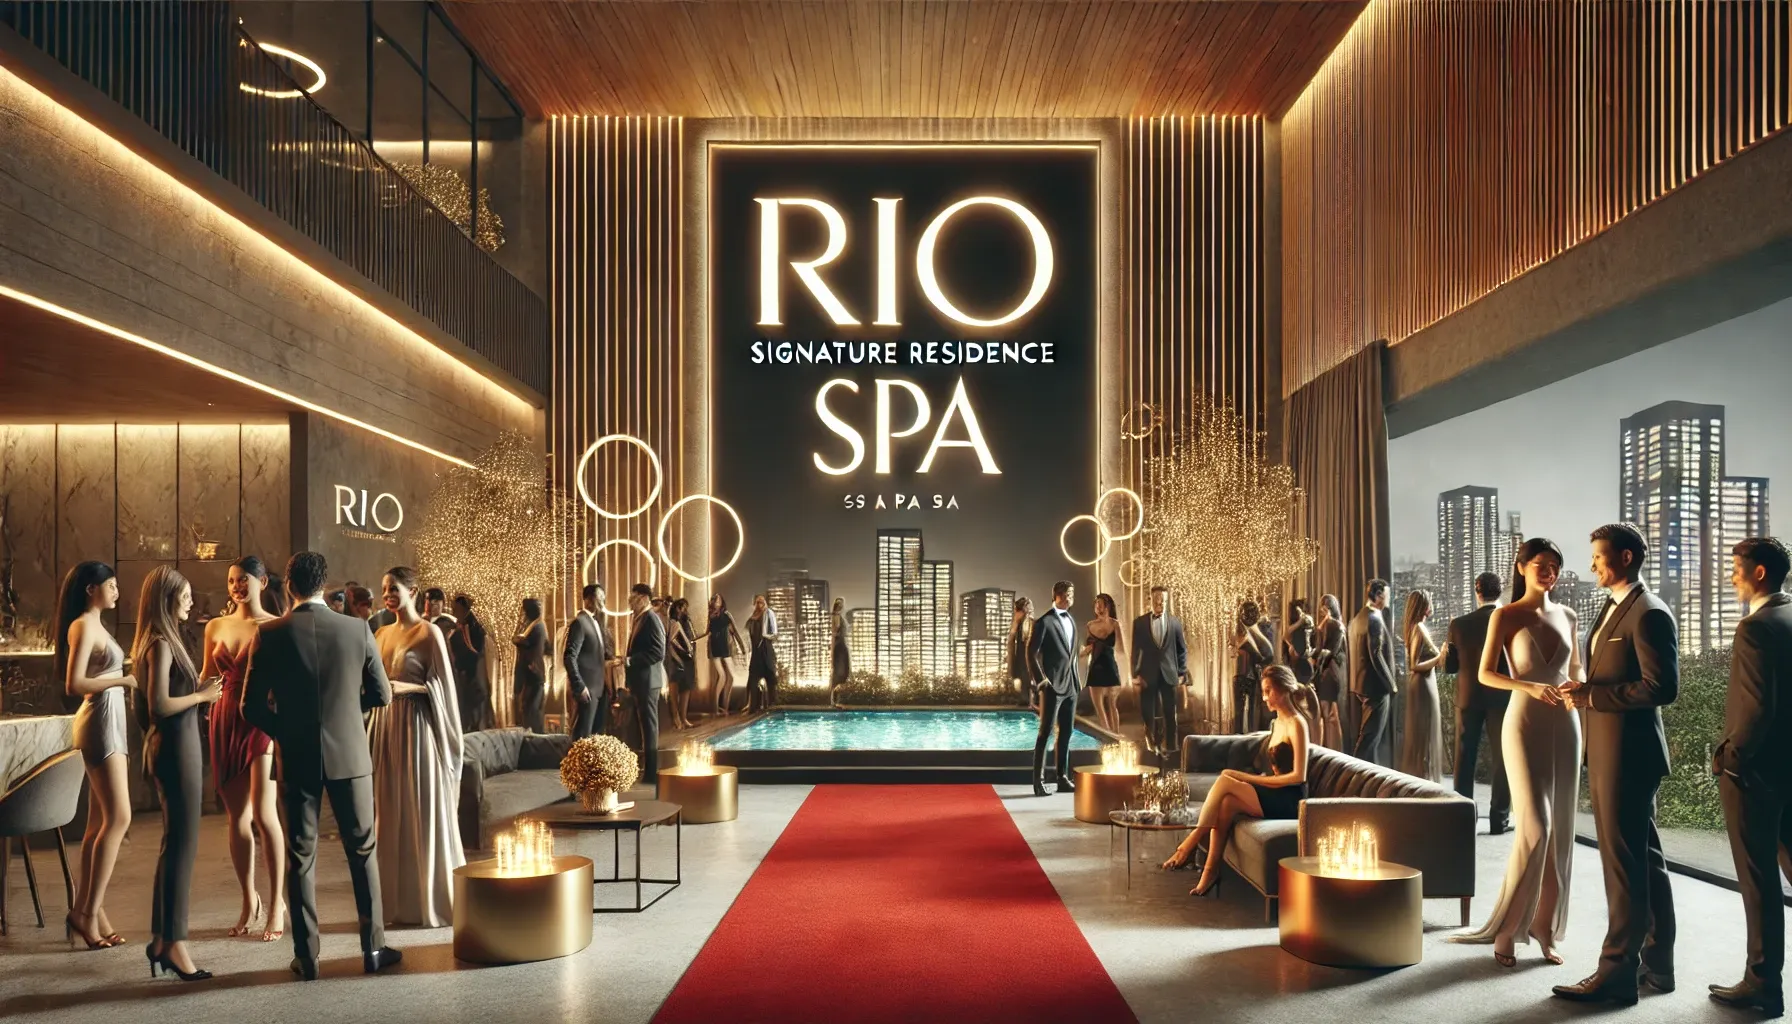 Riô Signature Residence Spa: A Inovação de Luxo e Exclusividade Chegando em Ipanema